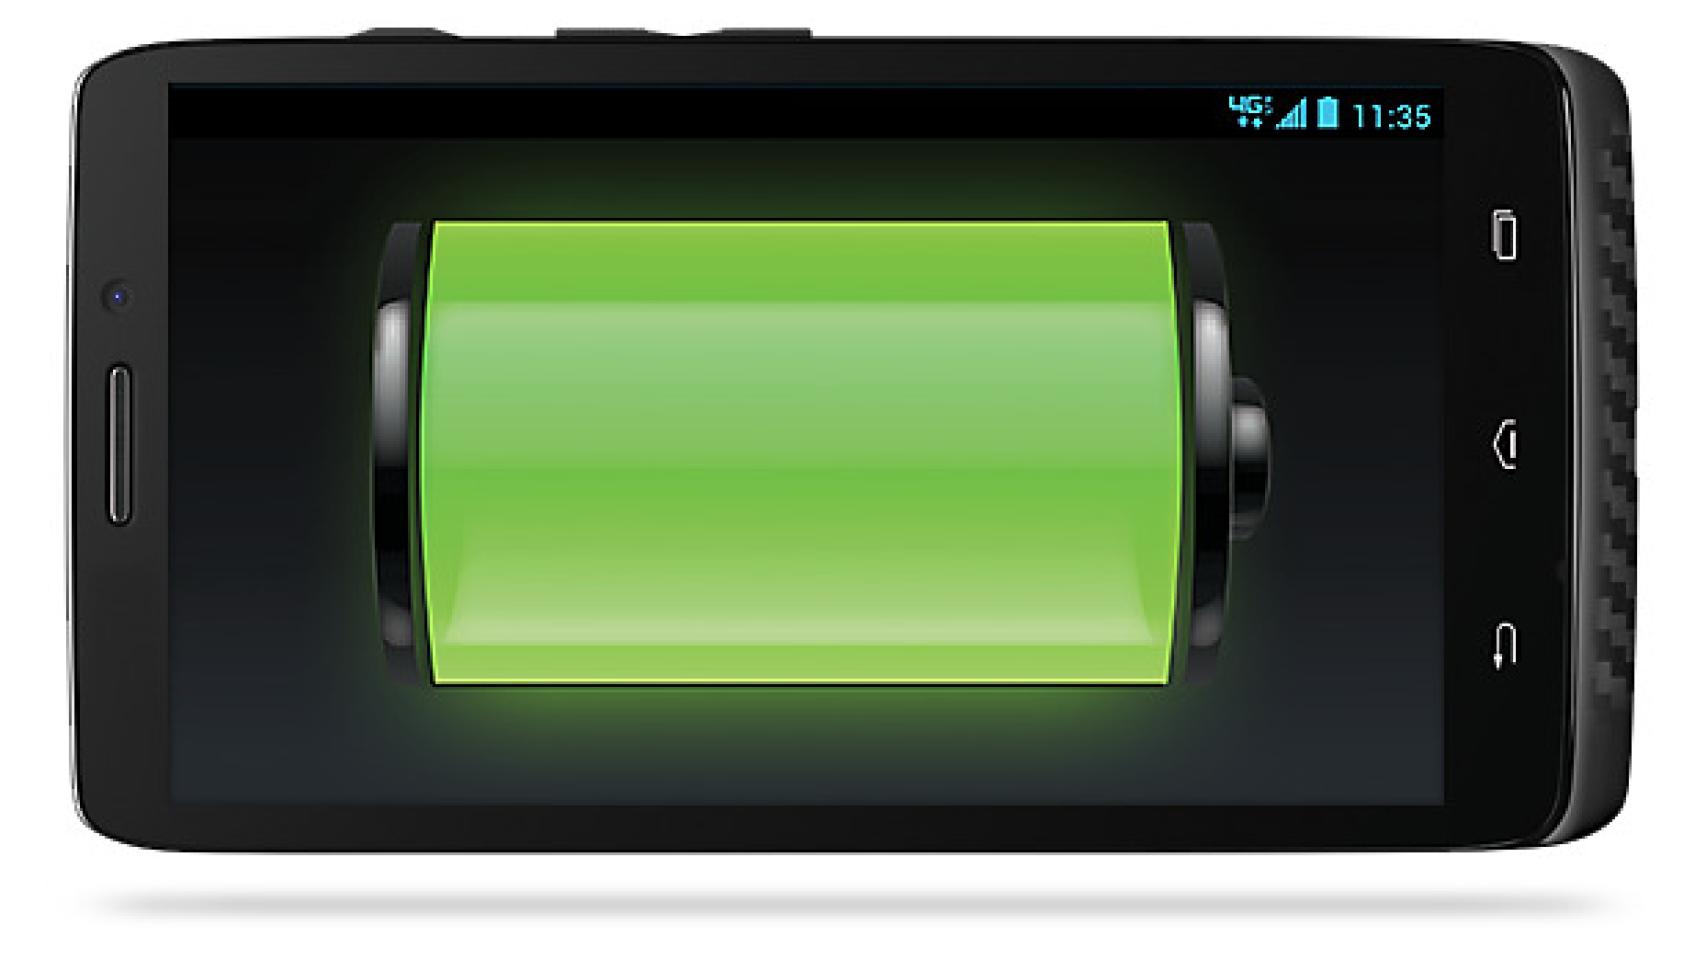 Baterías que duran 48 horas, Motorola dice que es posible con el Droid Maxx